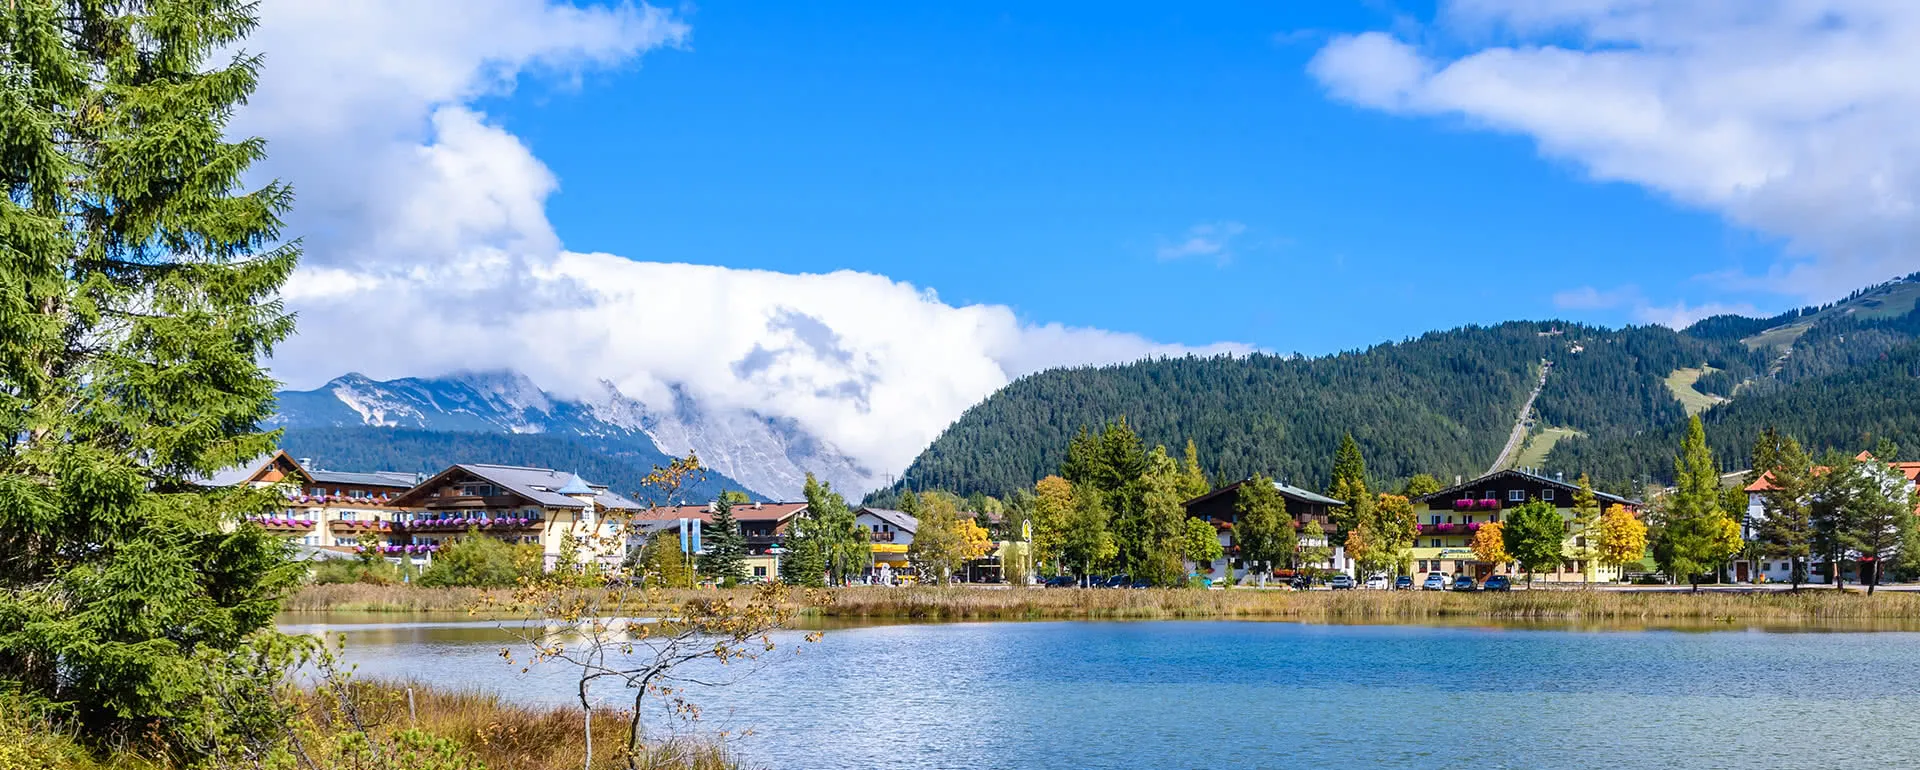 Seefeld in Tirol - das Reiseziel mit Jugendherbergen